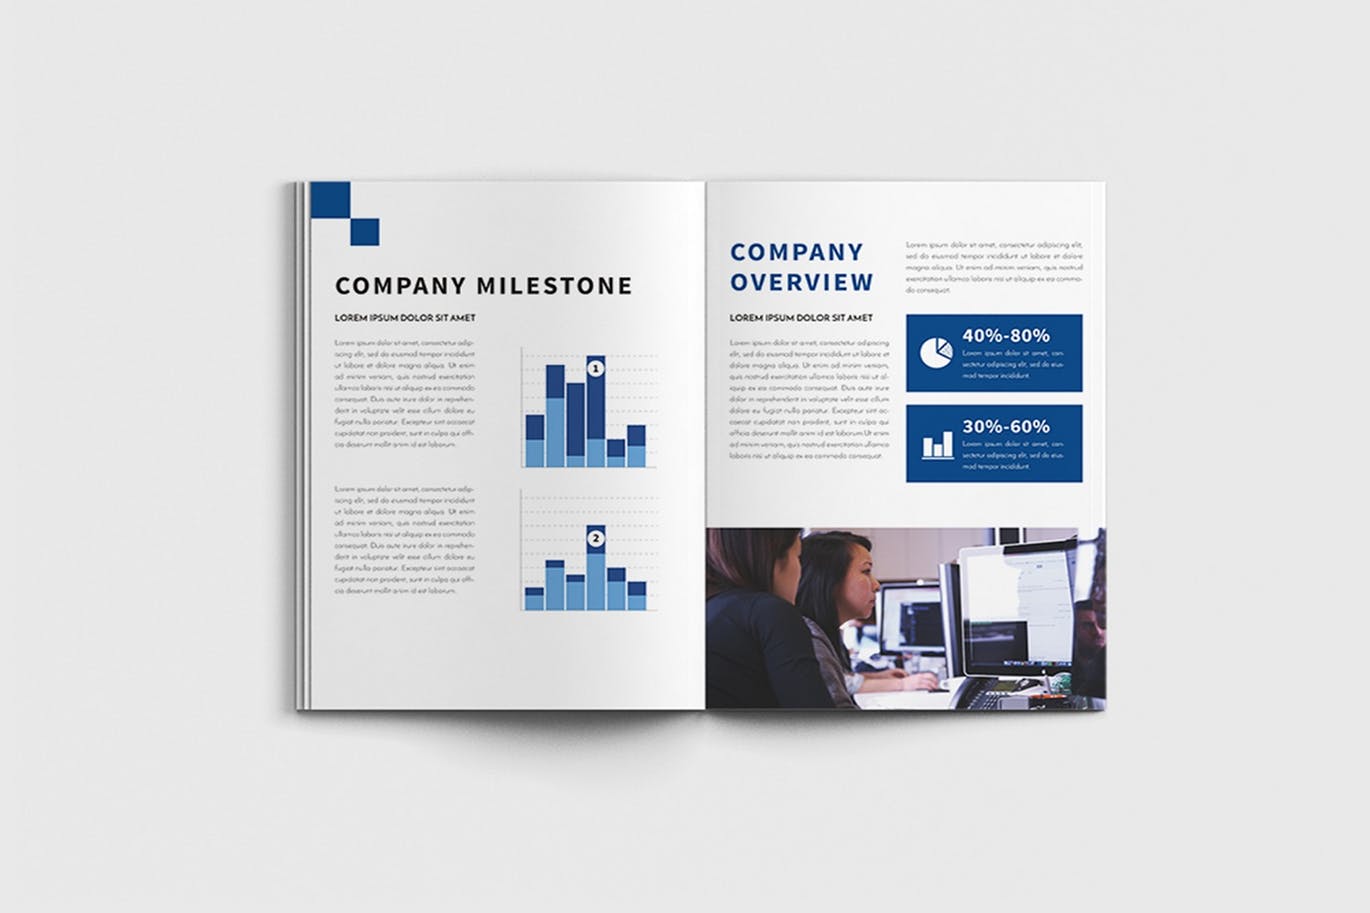 商业计划书/企业简介宣传画册设计模板 Walkers – A4 Business Brochure Template插图(9)